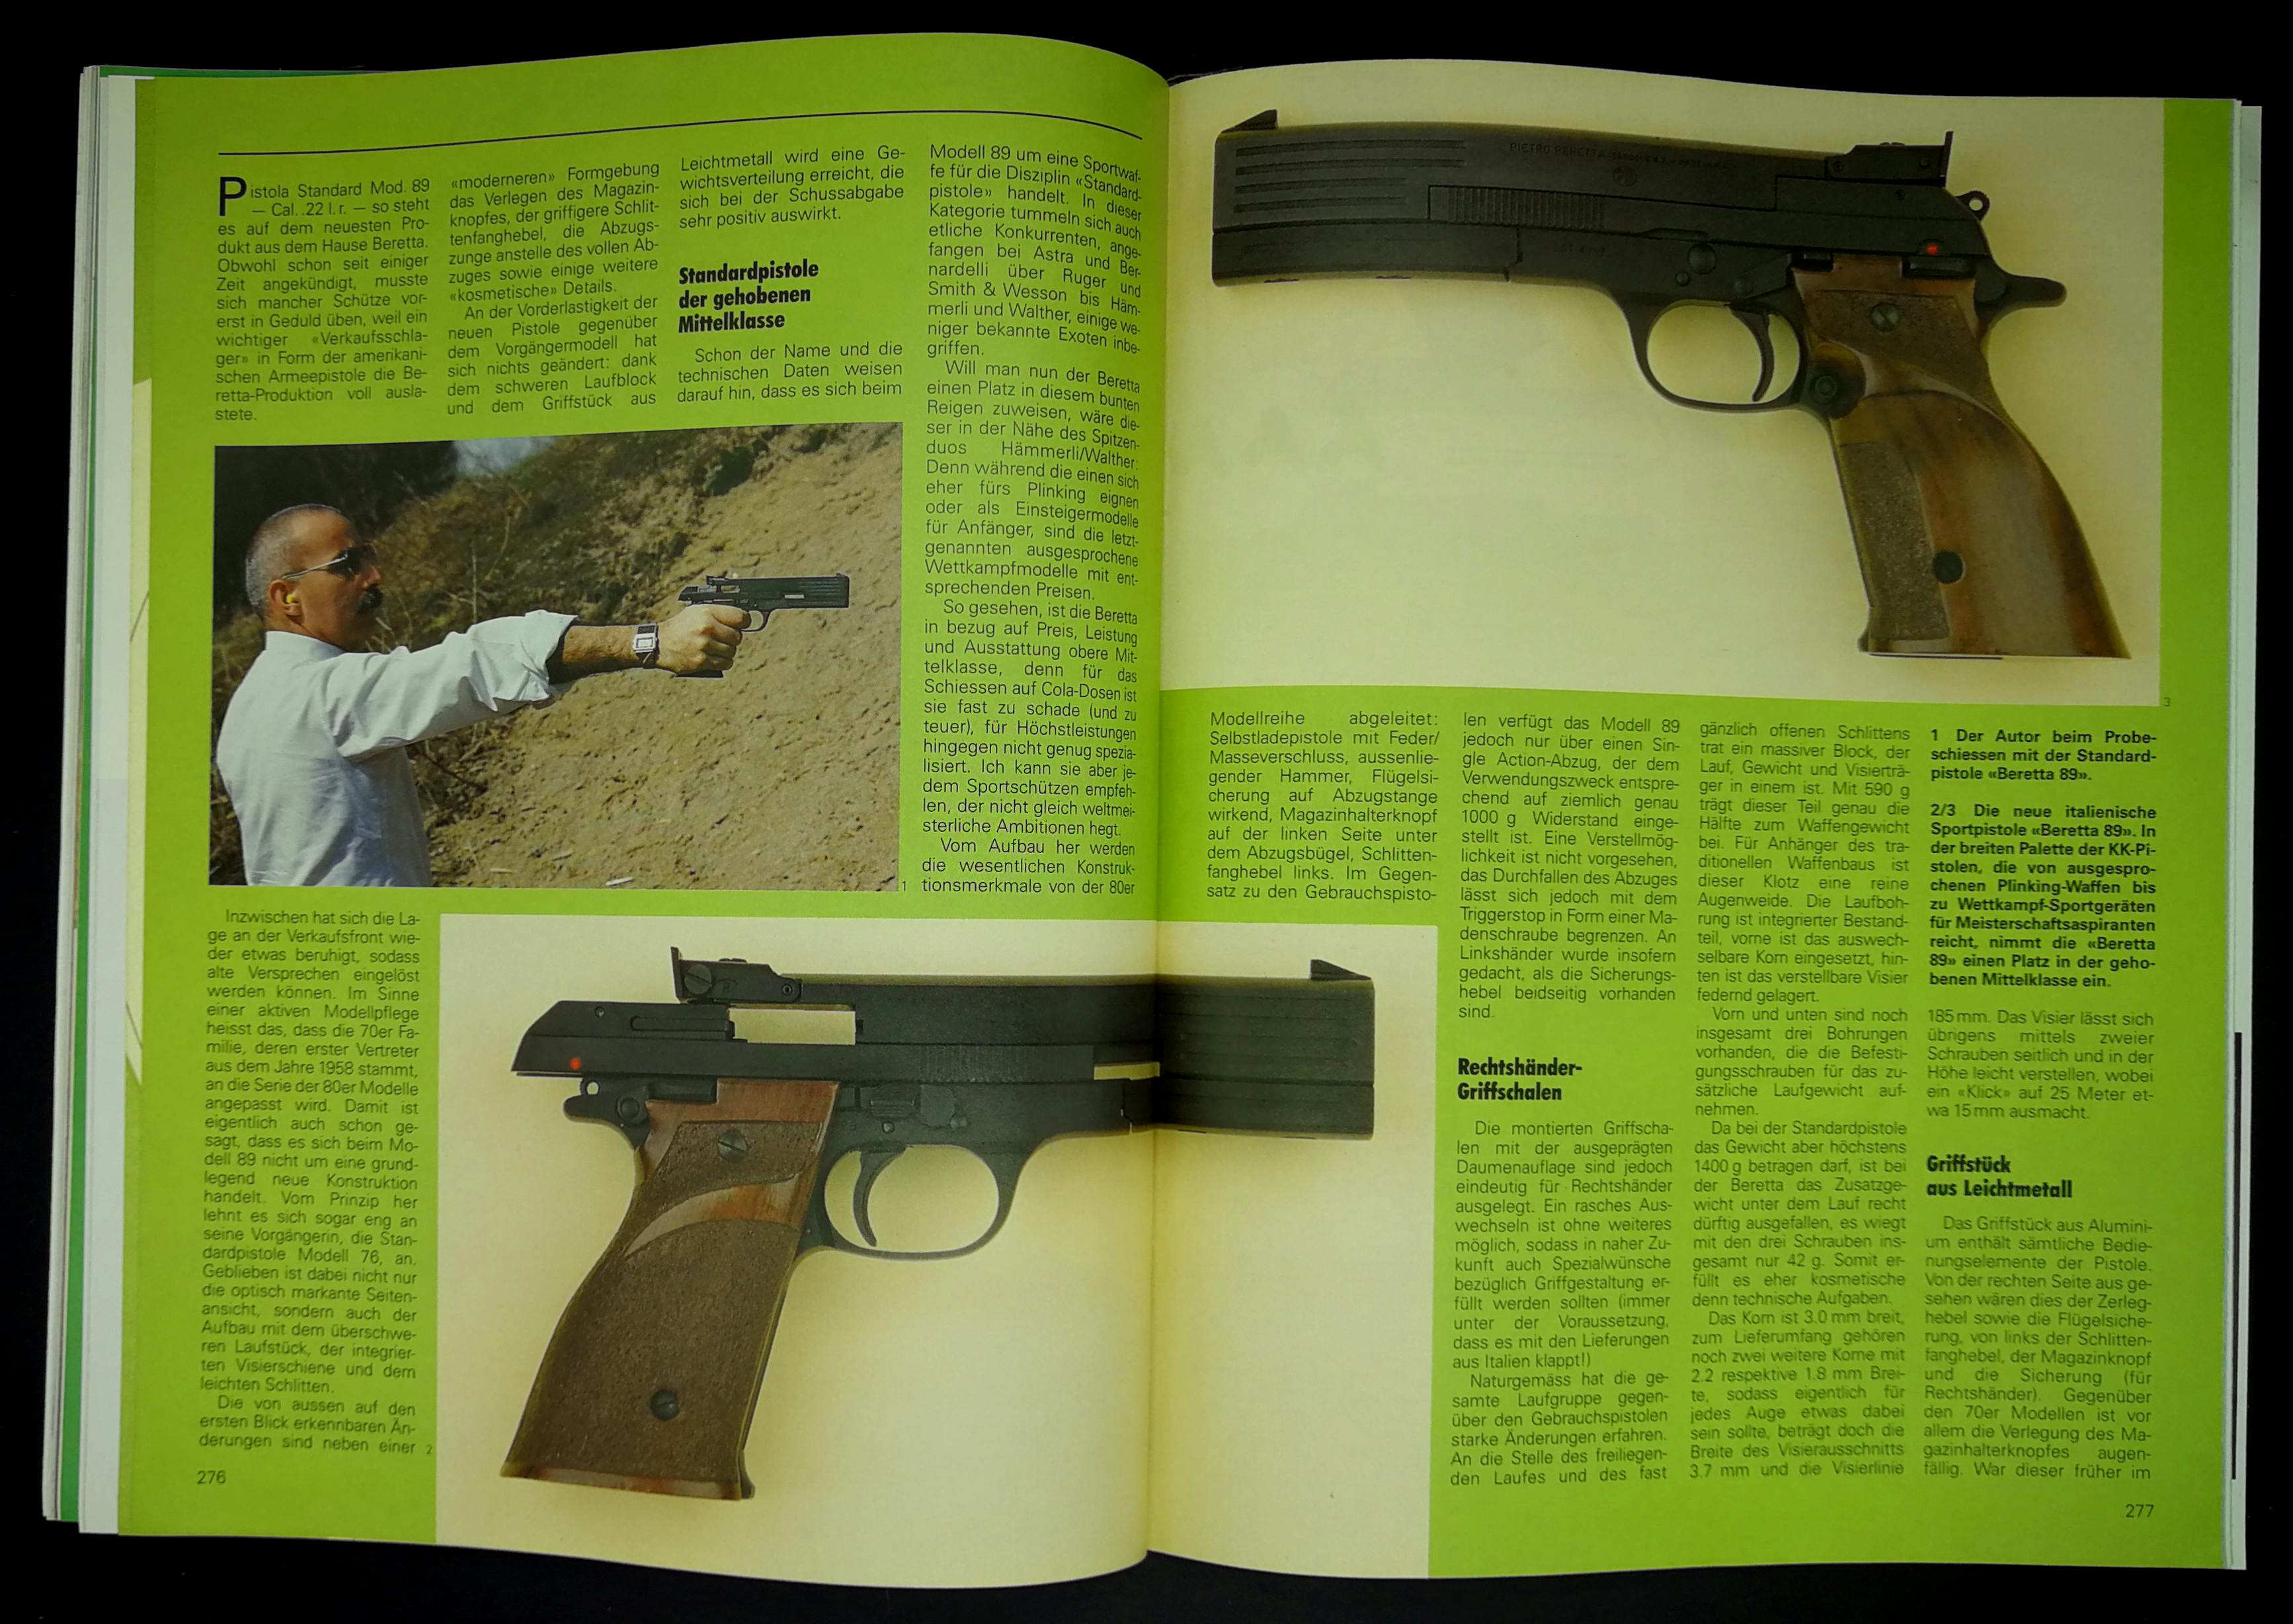 Sportpistole "Standard Mod. 89" von Beretta, für den Schützen, der "hohe Ansprüche, aber keine Weltmeisterambitionen" hat...
